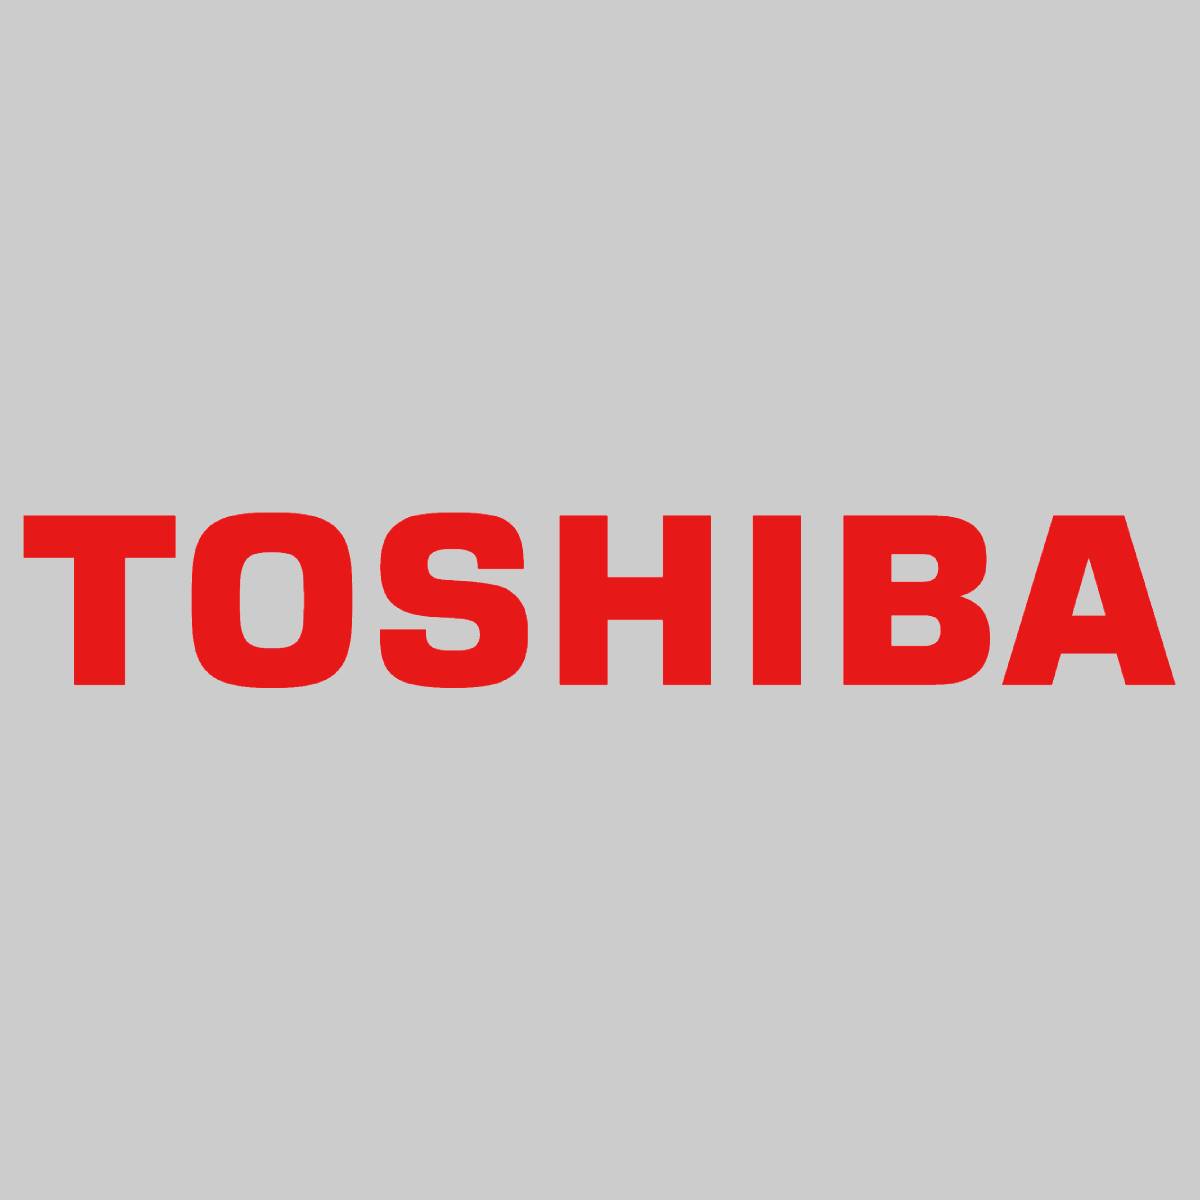 ''Original Toshiba T-FC25E-M / 6AJ00000078 Toner Magenta für E-Studio 2040C 2540